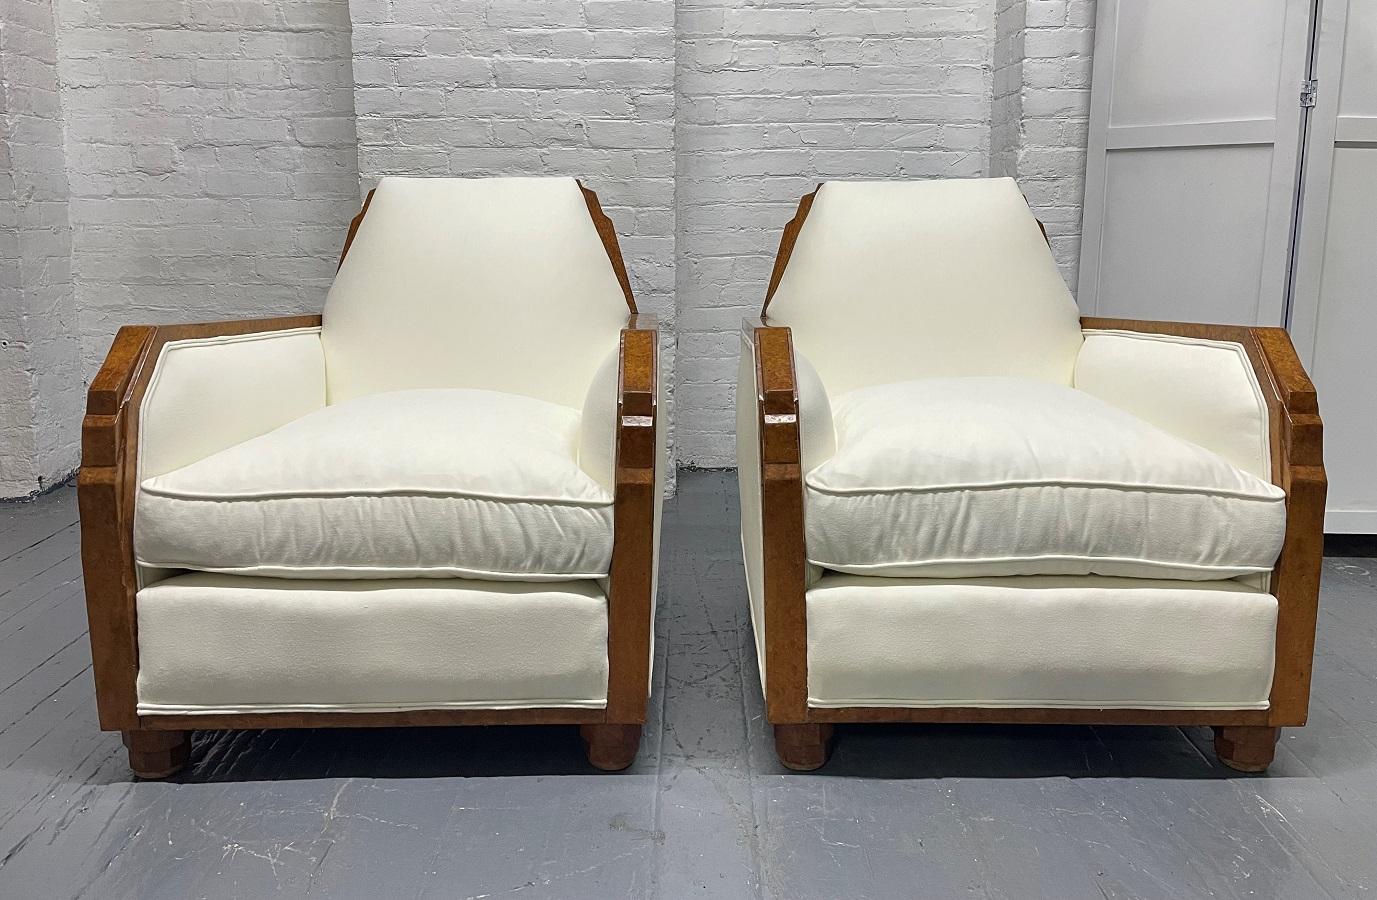 Paar französische Art Deco Lounge- oder Clubsessel aus den 1940er Jahren. Die Stühle haben einen Rahmen aus Amboyna-Holz und sind hübsch gepolstert. 




  